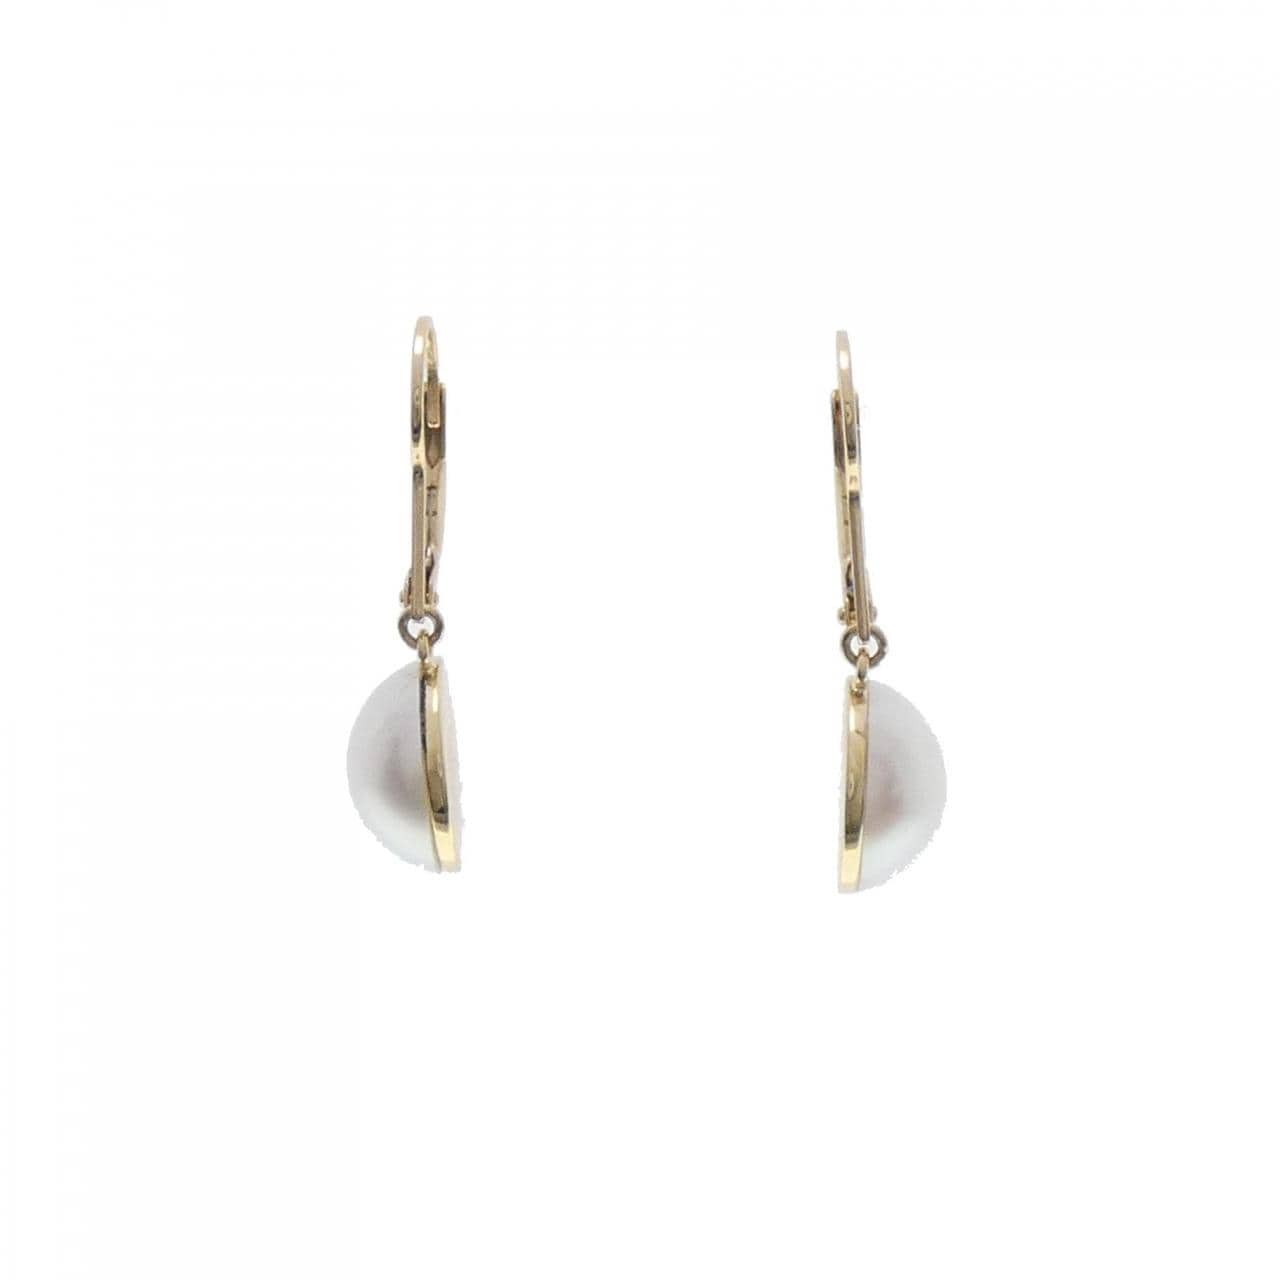 Tasaki mabe pearl earrings